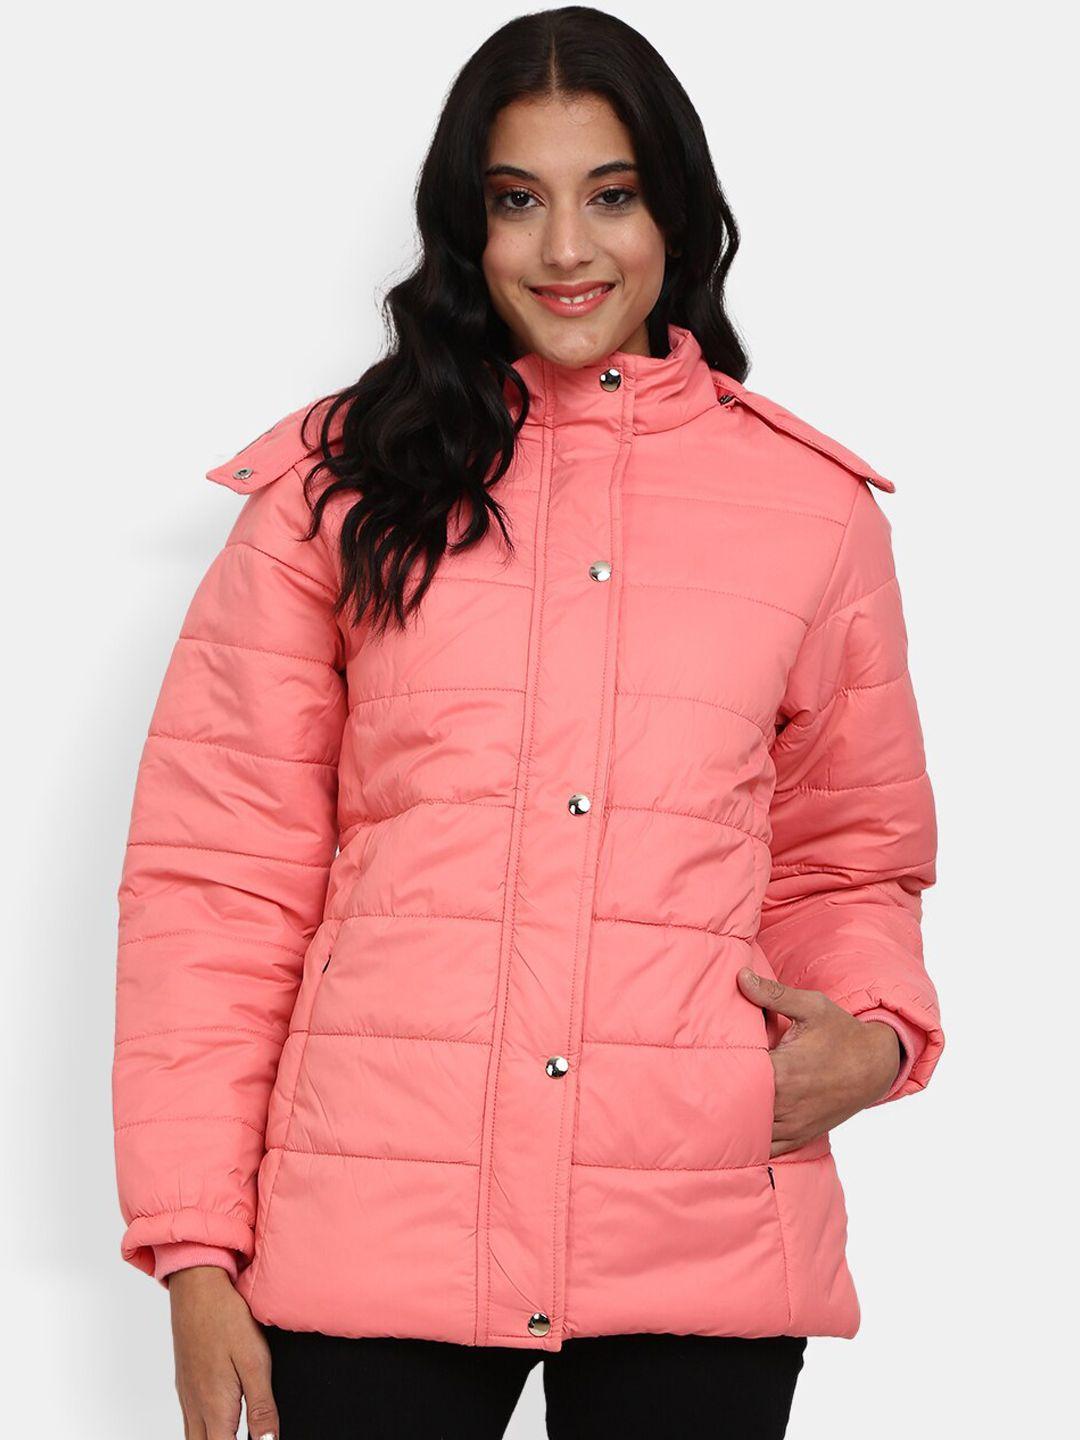 v-mart women coral puffer jacket